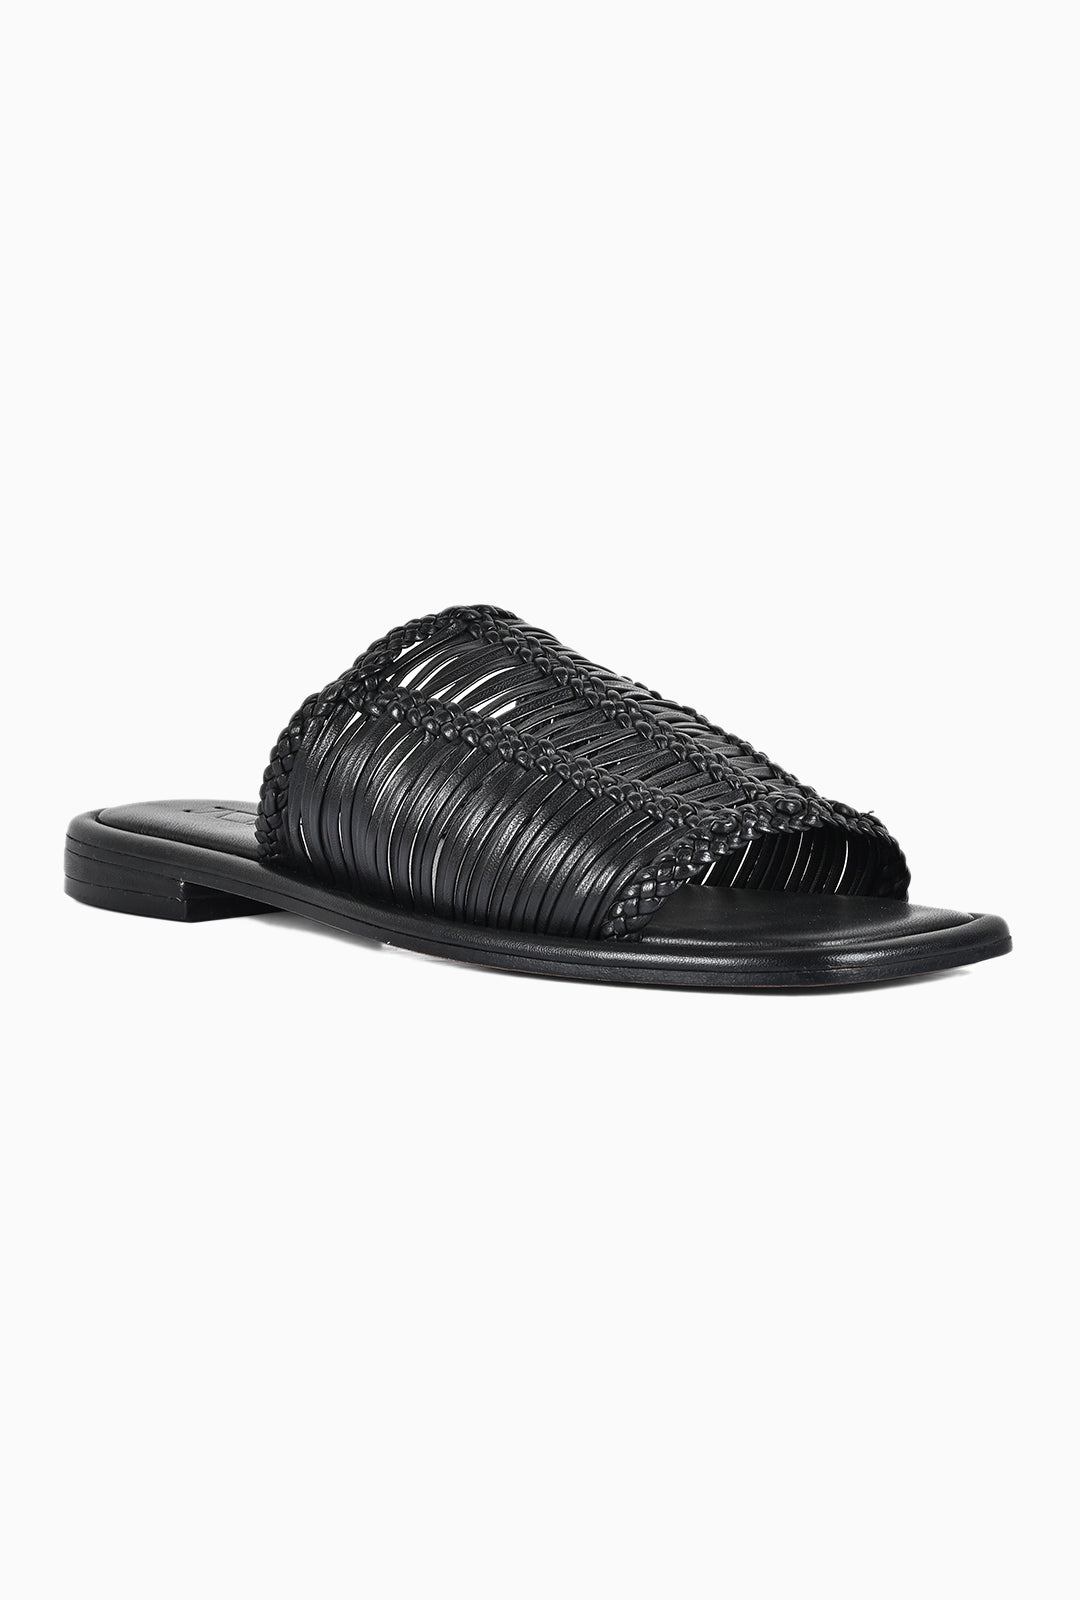 Polly Black Slip on Sandals